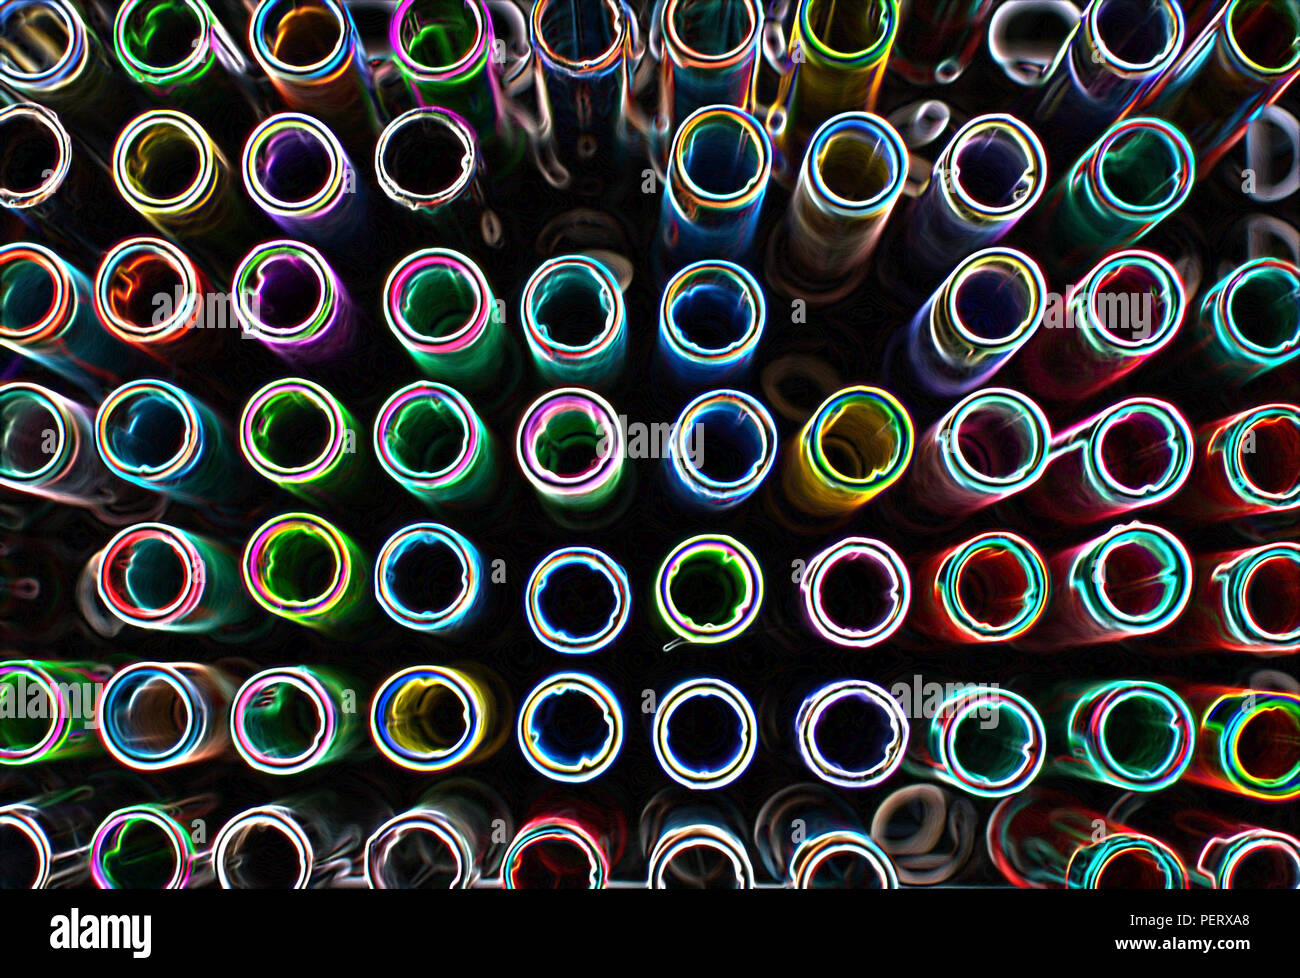 Zusammenfassung Hintergrund Künstler tools Färbung Stifte in vielen Schattierungen von oben in Schwarz und Farben gesehen Stockfoto